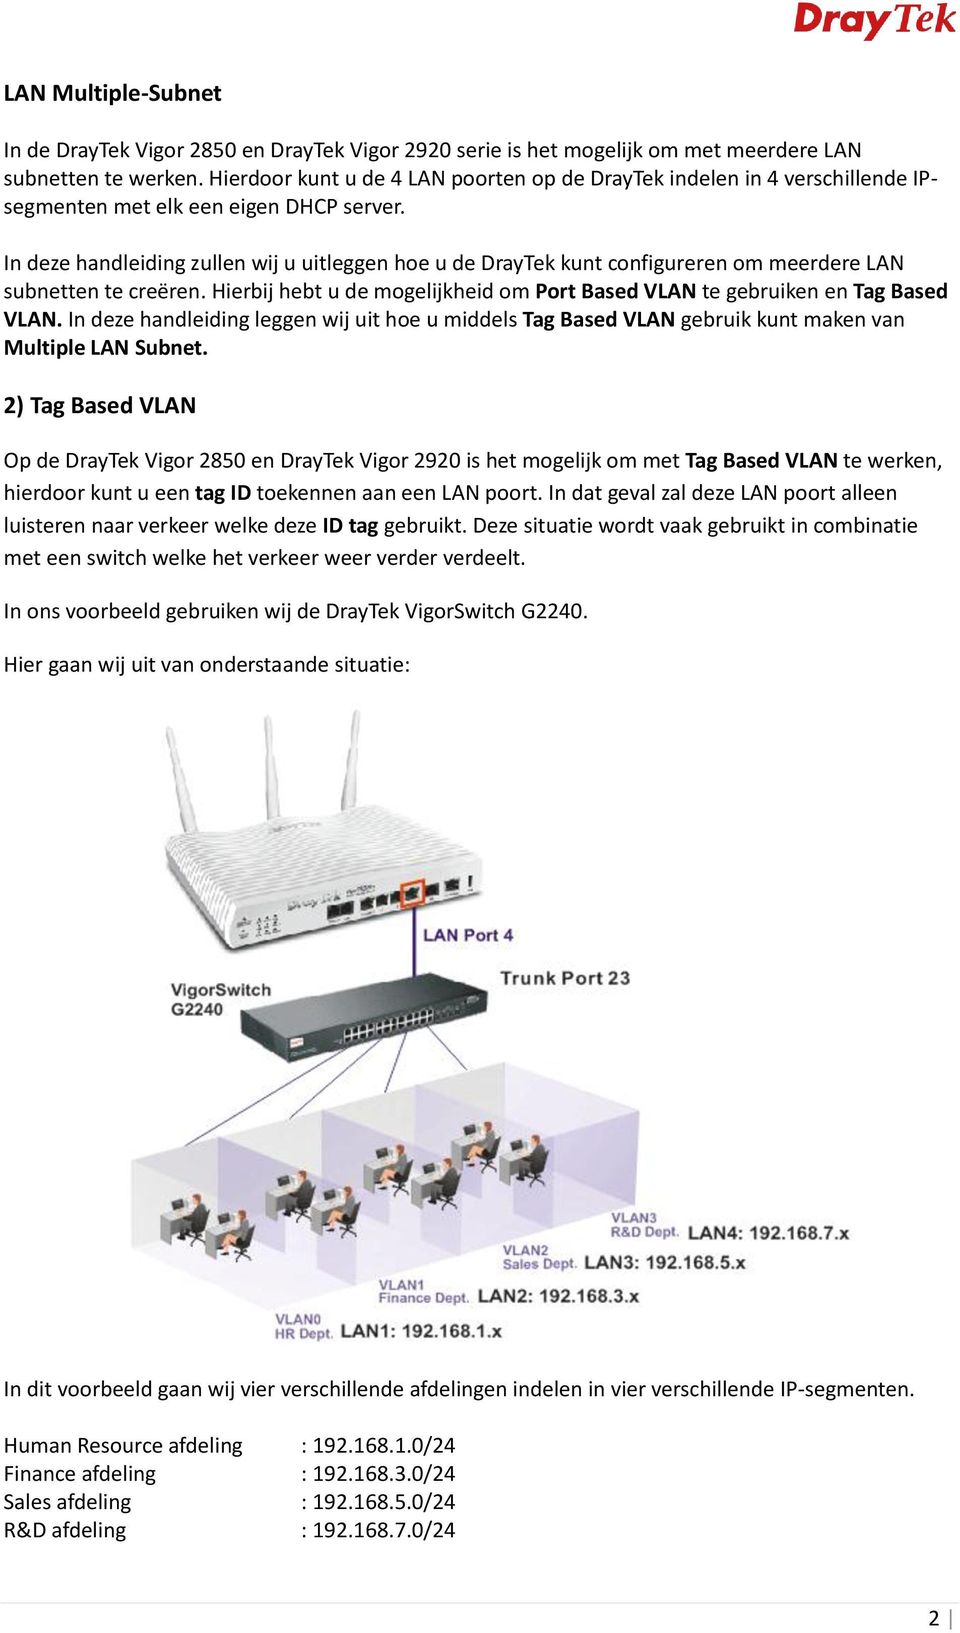 In deze handleiding zullen wij u uitleggen hoe u de DrayTek kunt configureren om meerdere LAN subnetten te creëren. Hierbij hebt u de mogelijkheid om Port Based VLAN te gebruiken en Tag Based VLAN.